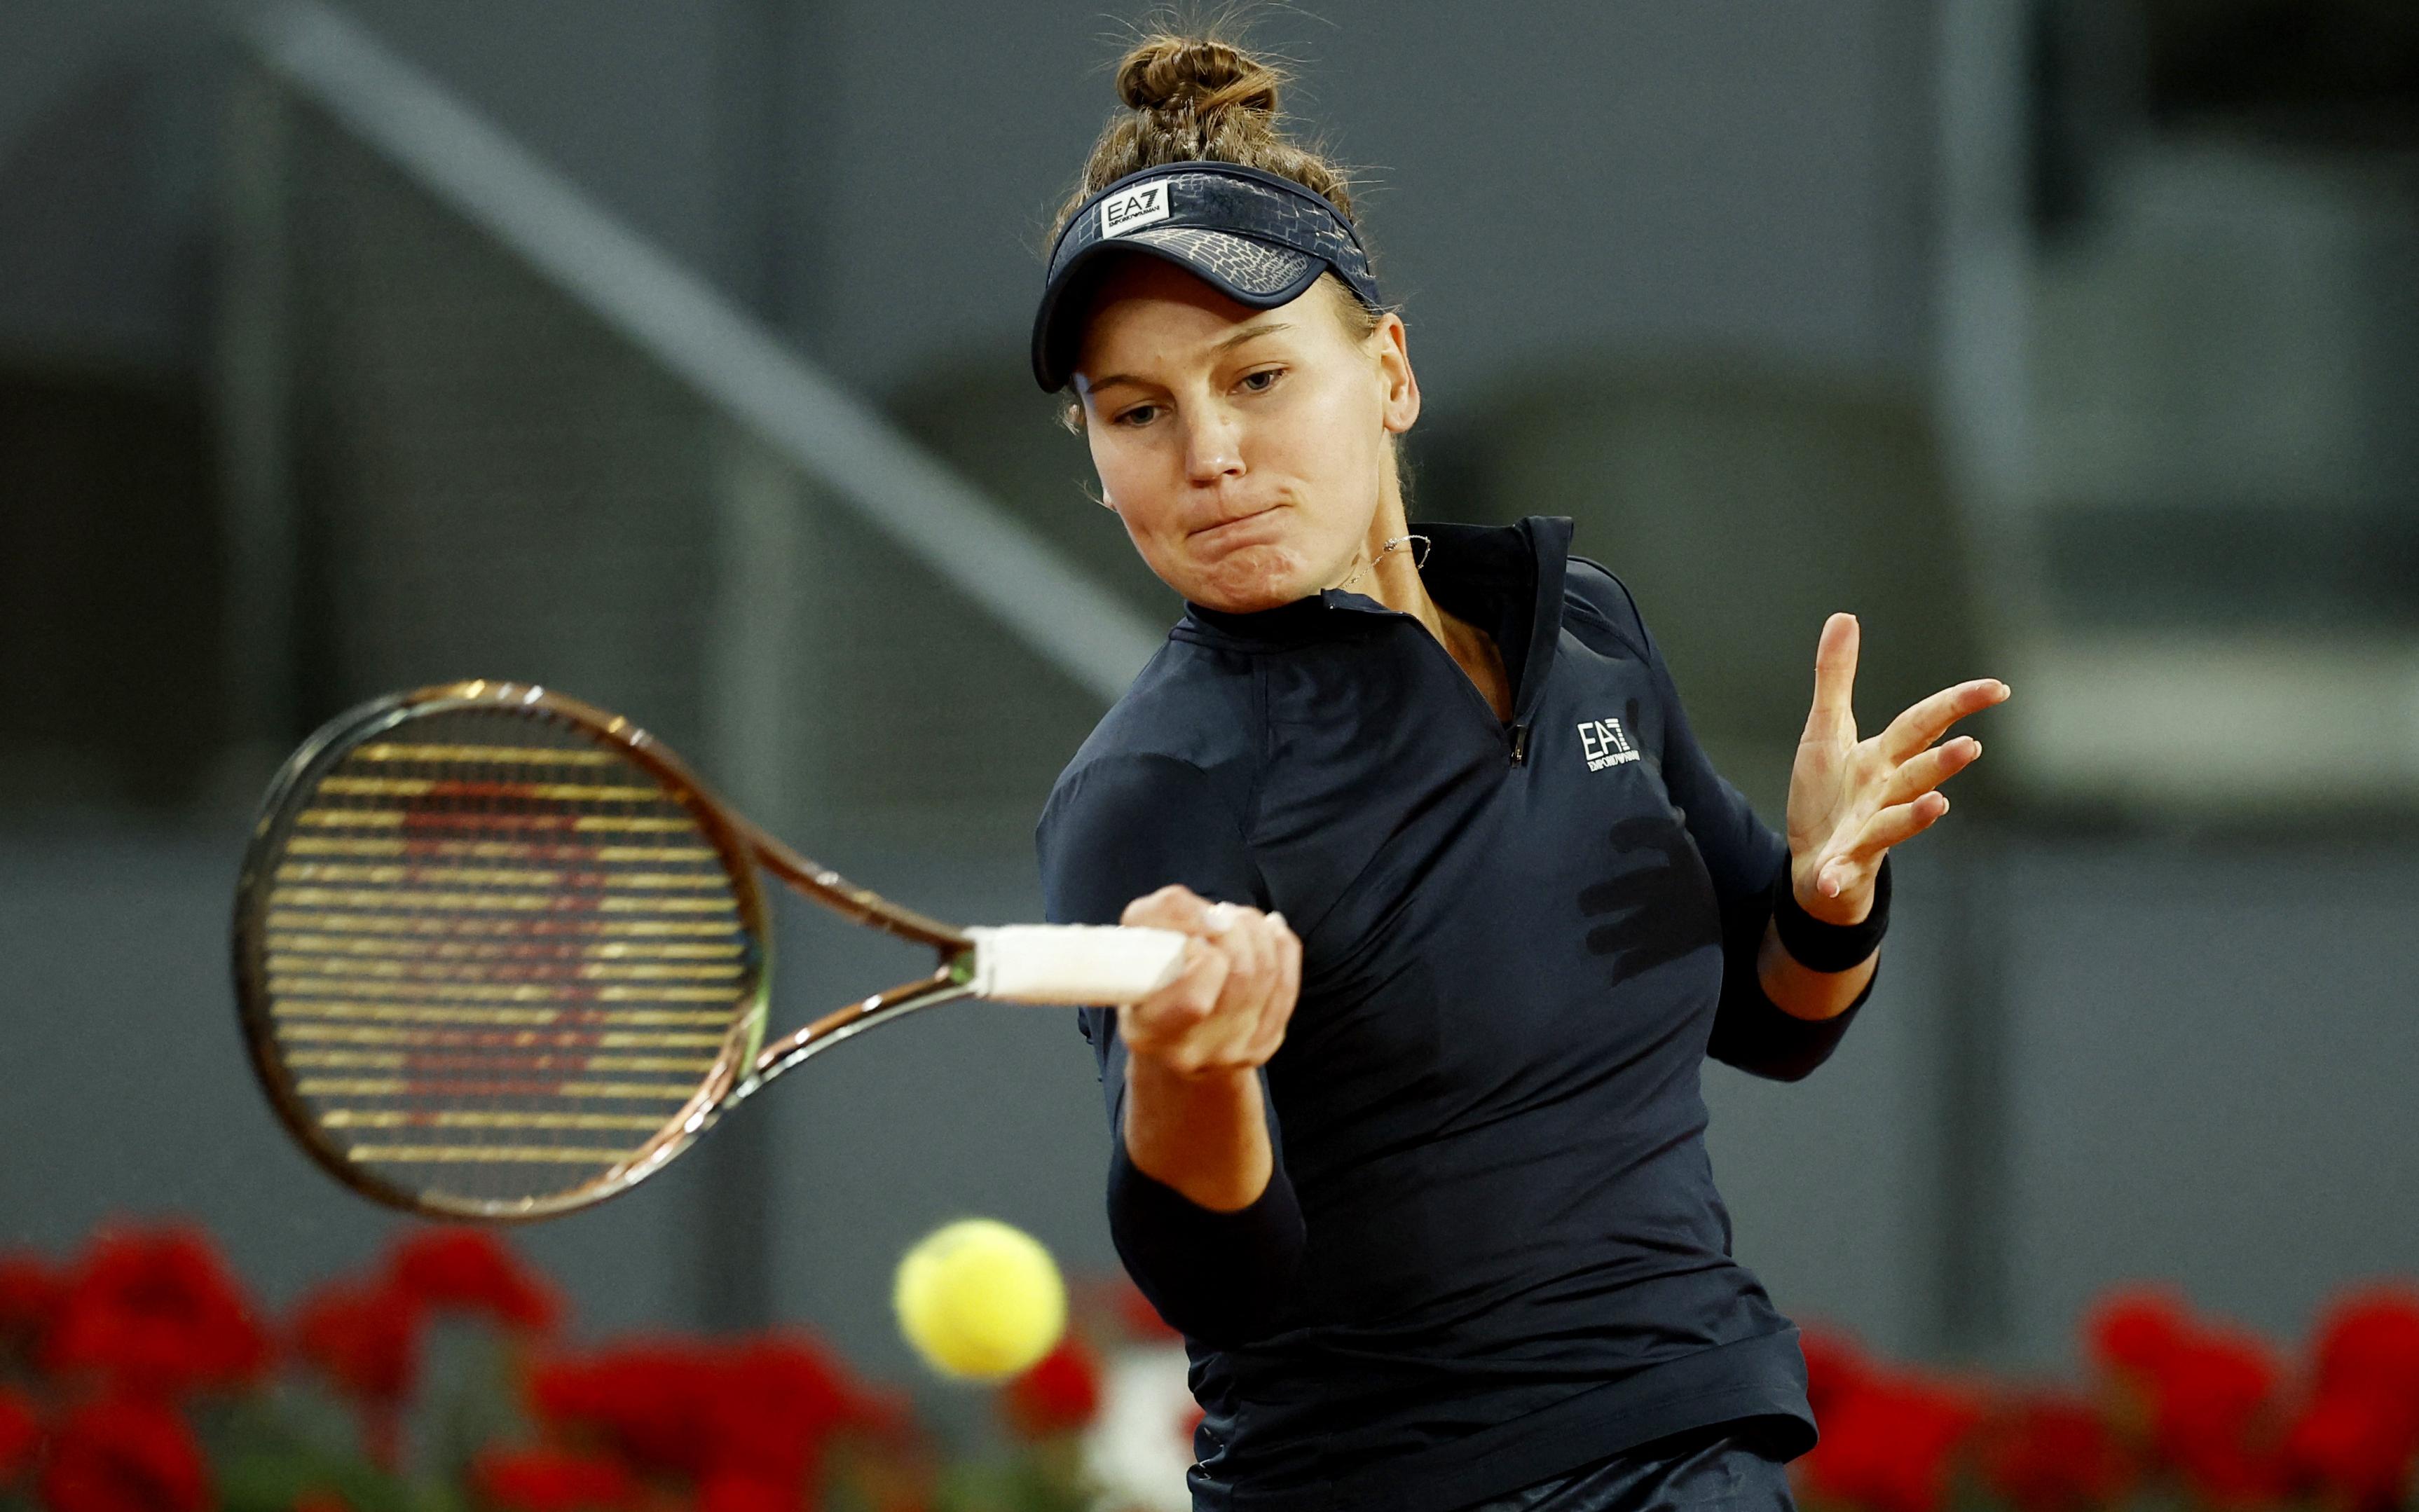 Кудерметова обыграла Потапову и вышла в 1/8 финала турнира WTA в Риме